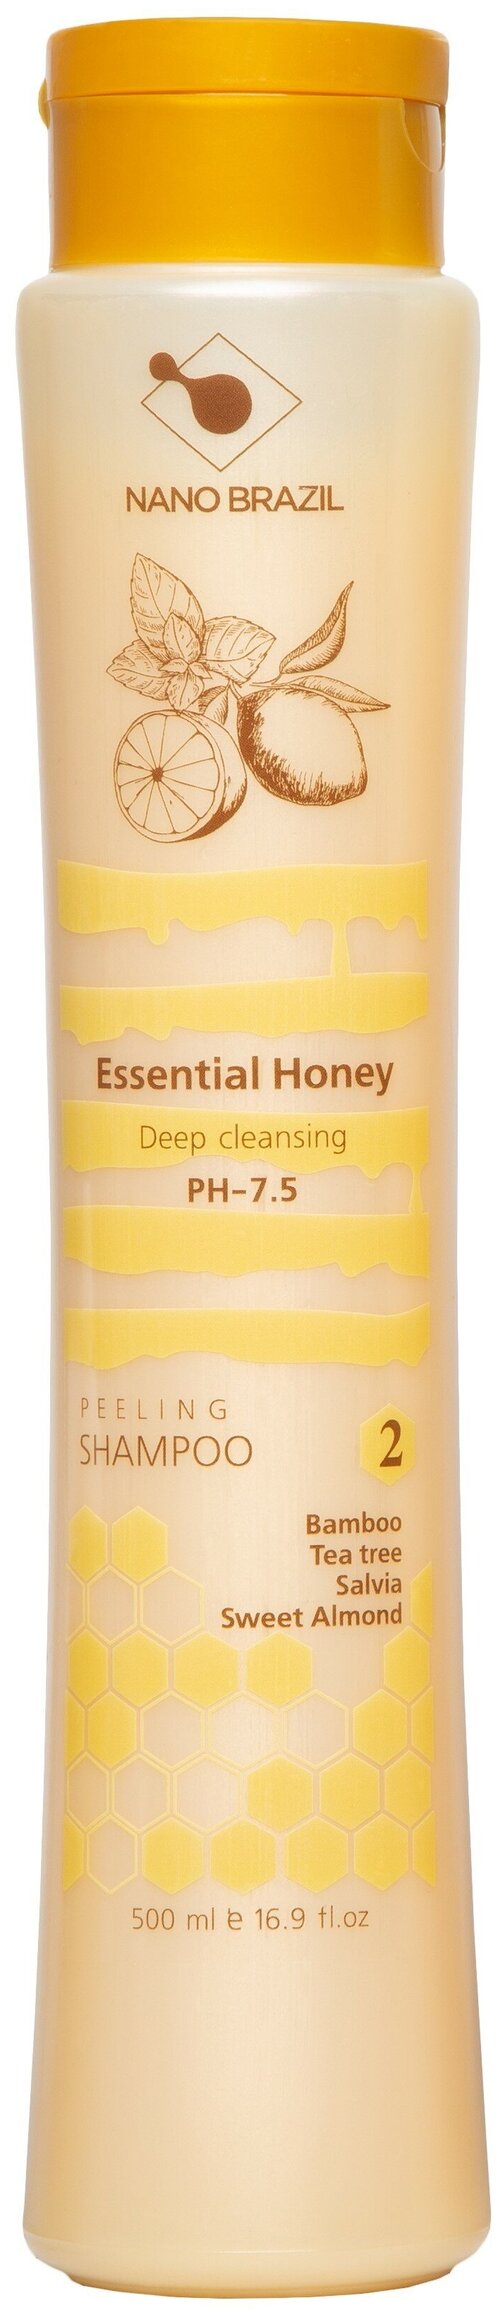 Подготавливающий пилинг шампунь для кожи головы против перхоти Essential Honey 500 мл